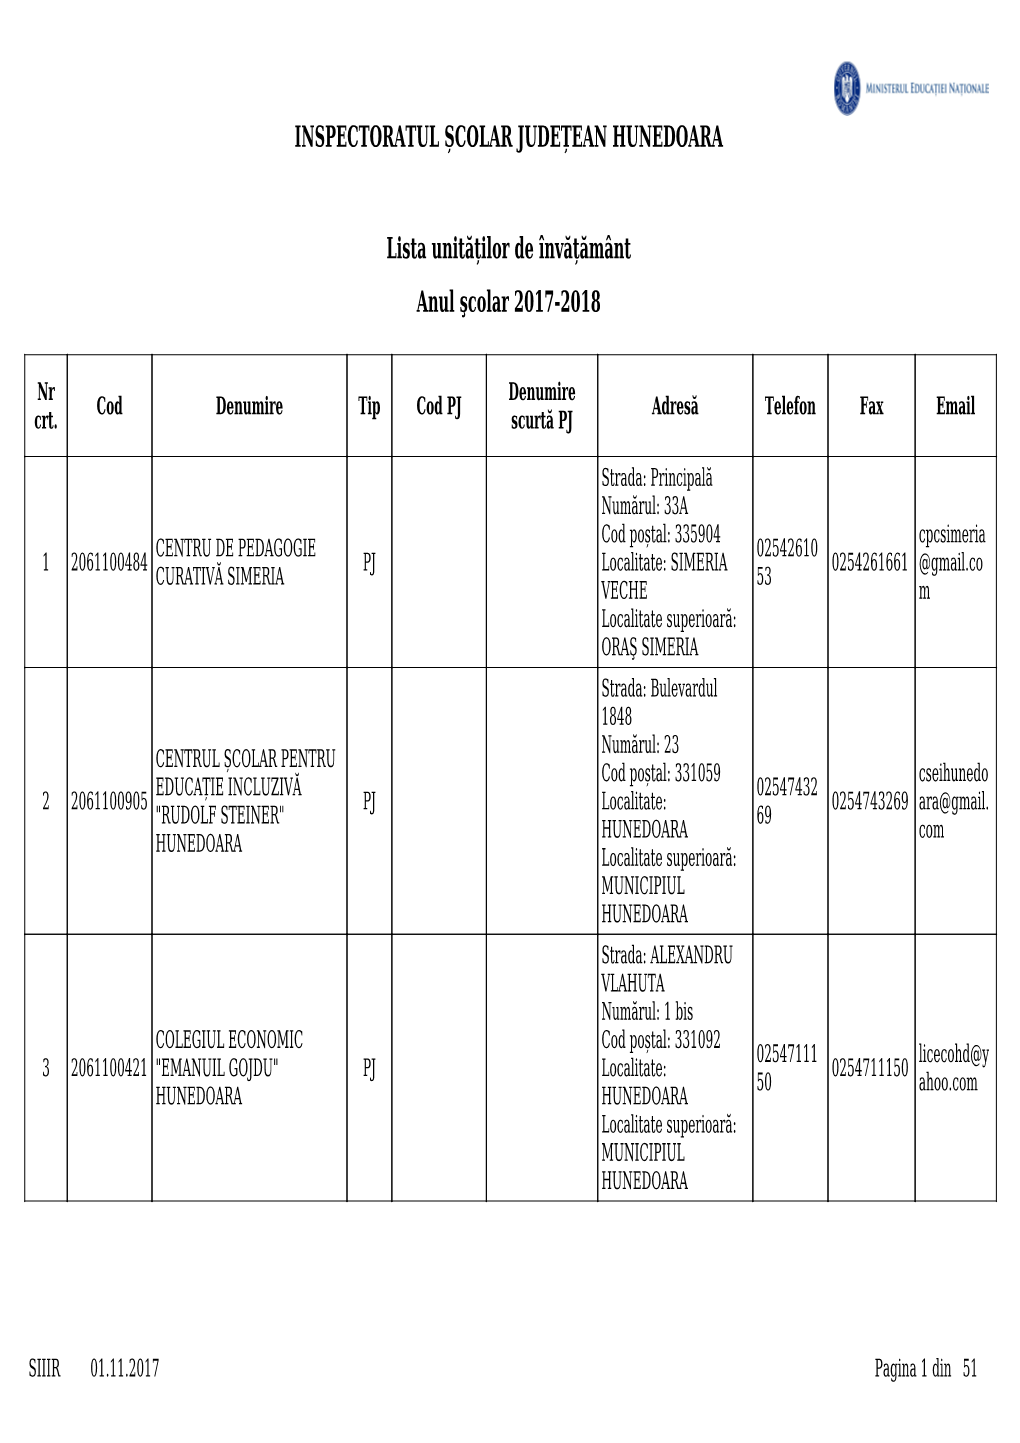 Lista Unităților De Învățământ INSPECTORATUL ȘCOLAR JUDEȚEAN HUNEDOARA Anul Şcolar 2017-2018